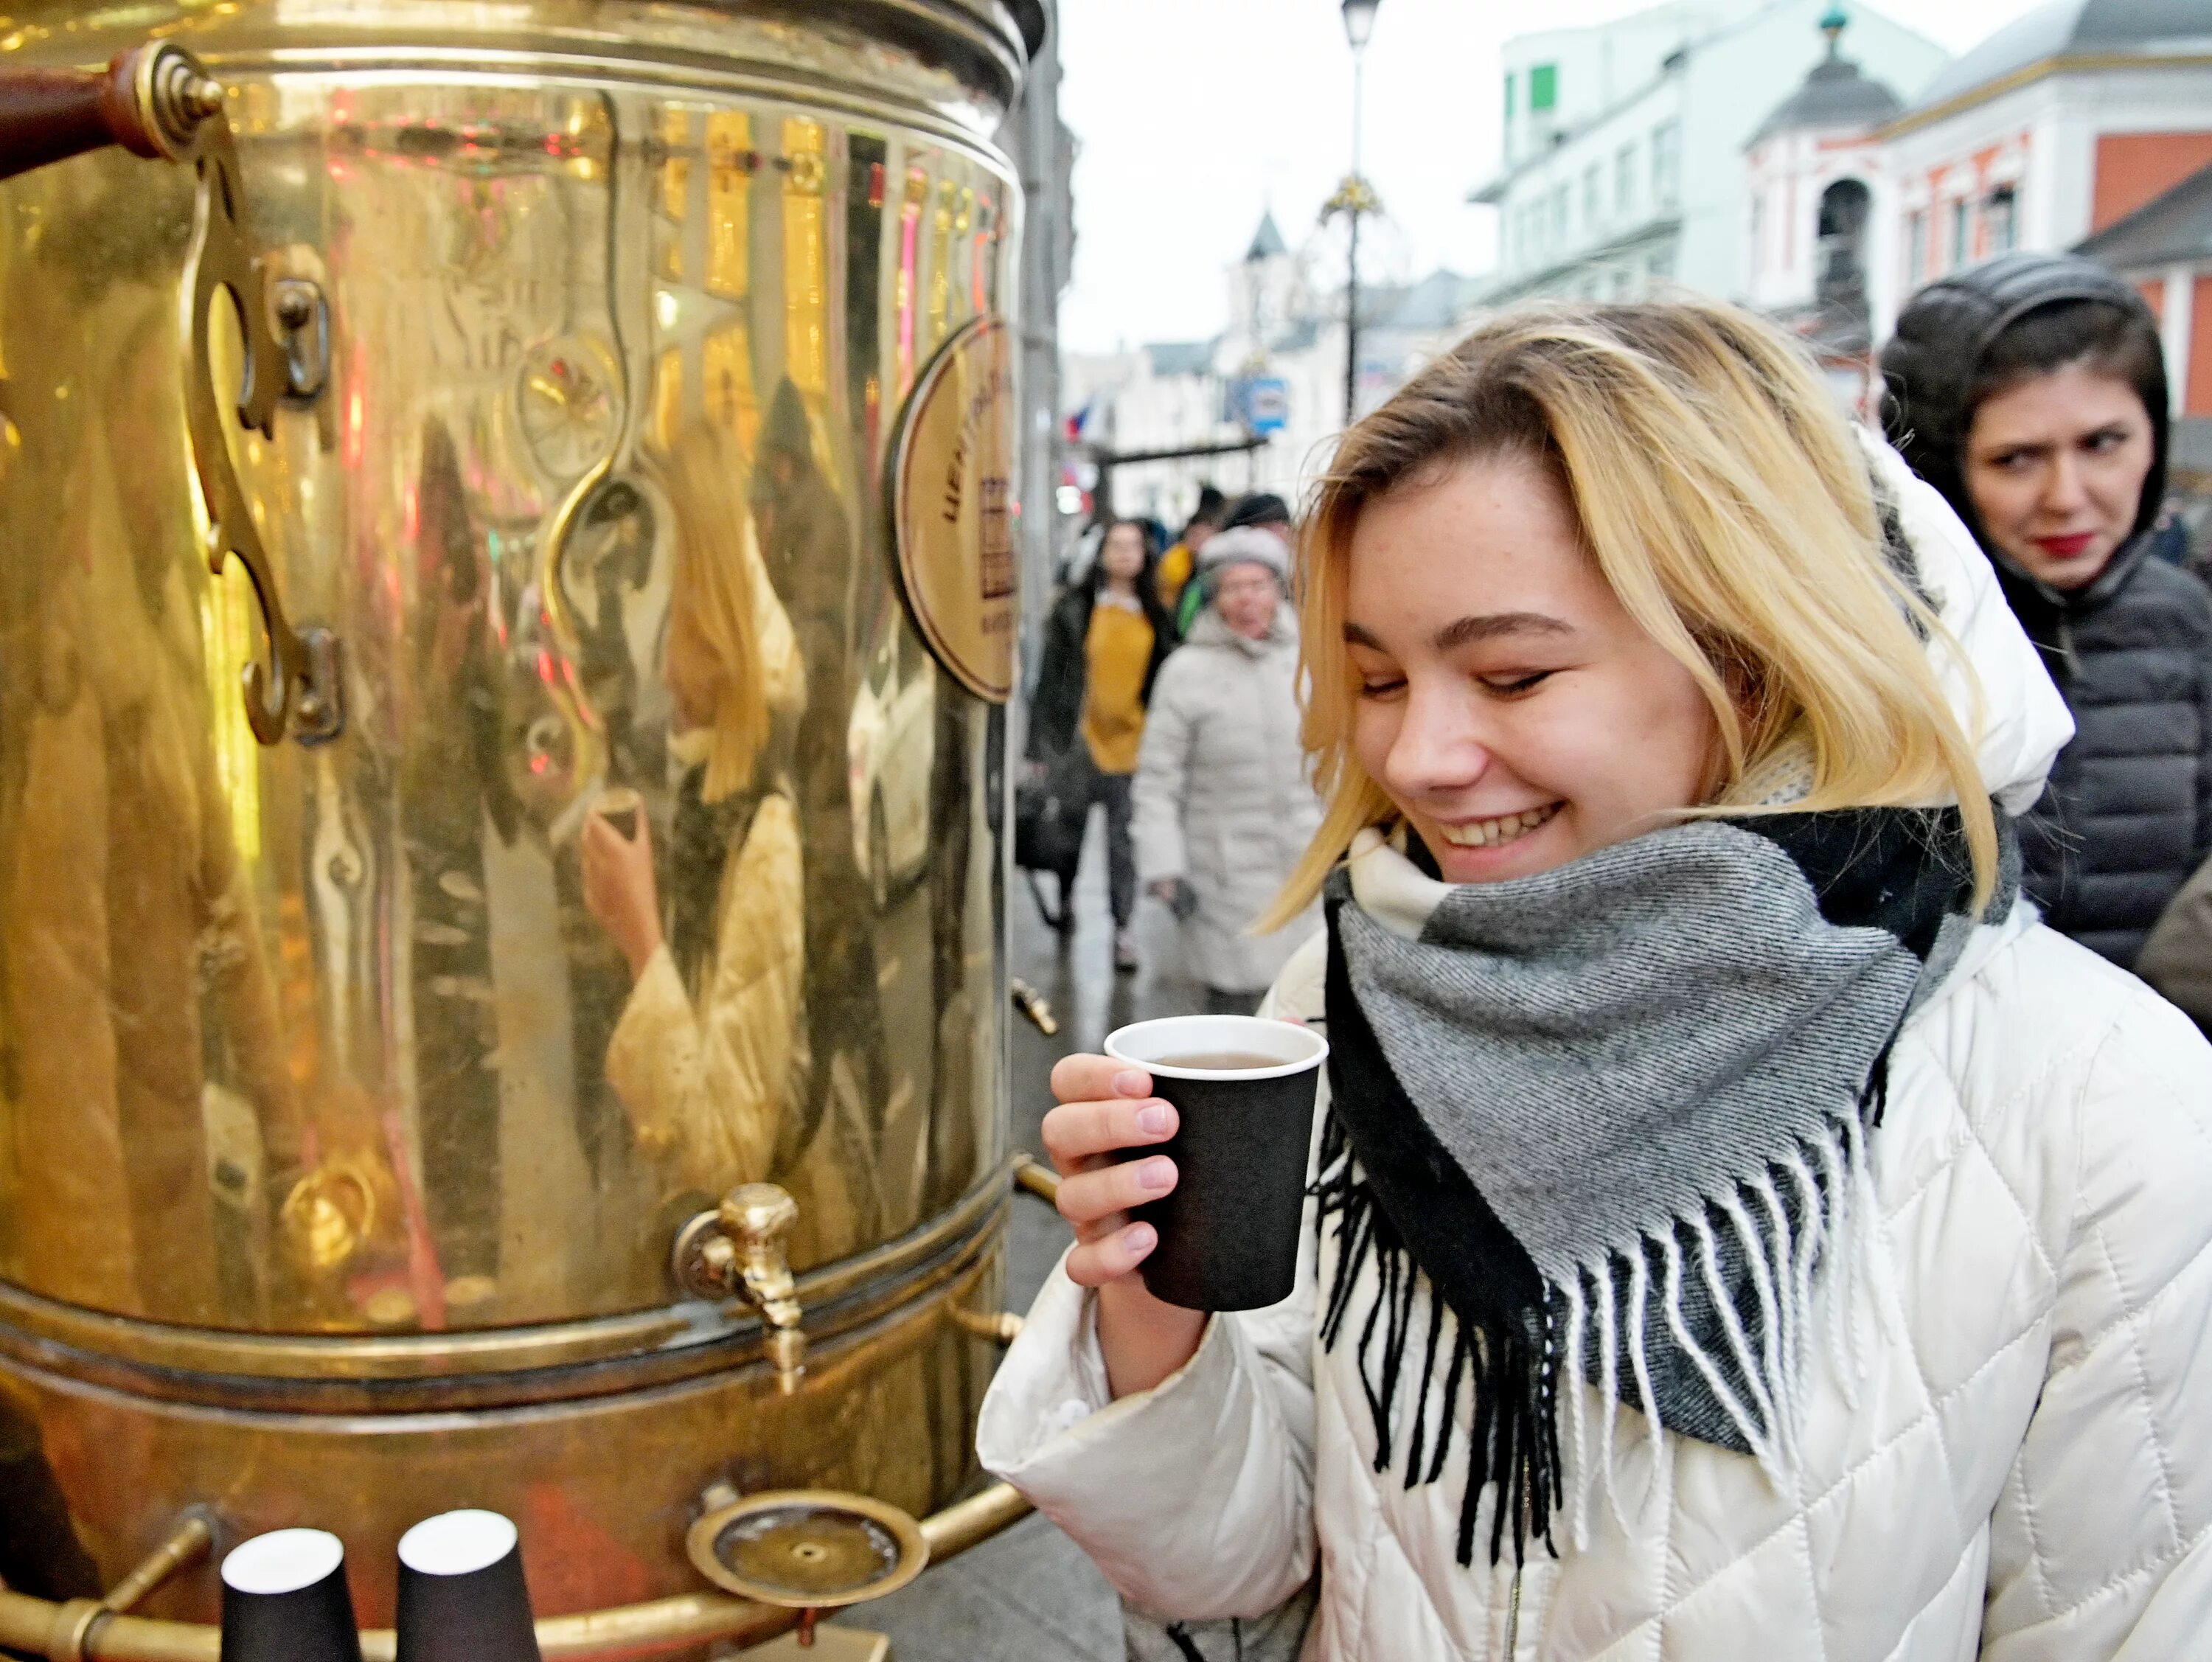 Метеочувствительных людей сегодня москва. Чай вечерняя Москва. Люди пьют чай в центре Москвы прямо на улице. Вечерняя Москва Макария.